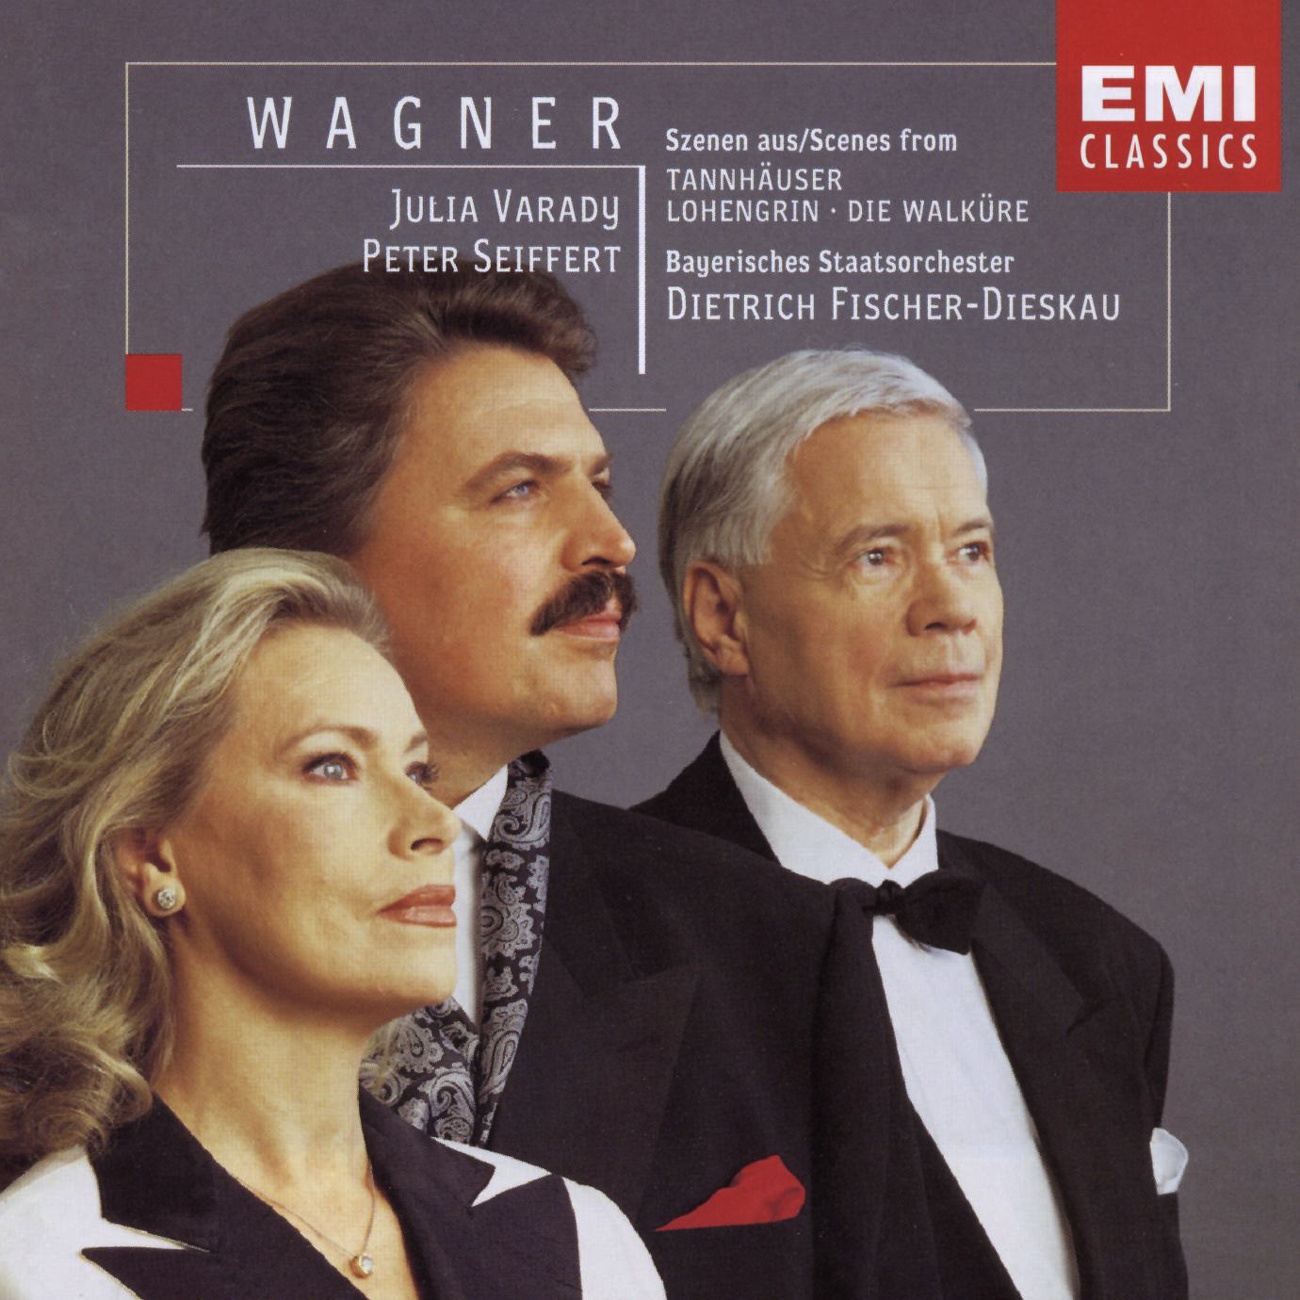 WagnerSzenen, Die Walkü re  Oper in 3 Aufzü gen, Erster Aufzug:  O sü este Wonne! seligstes Weib! Siegmund